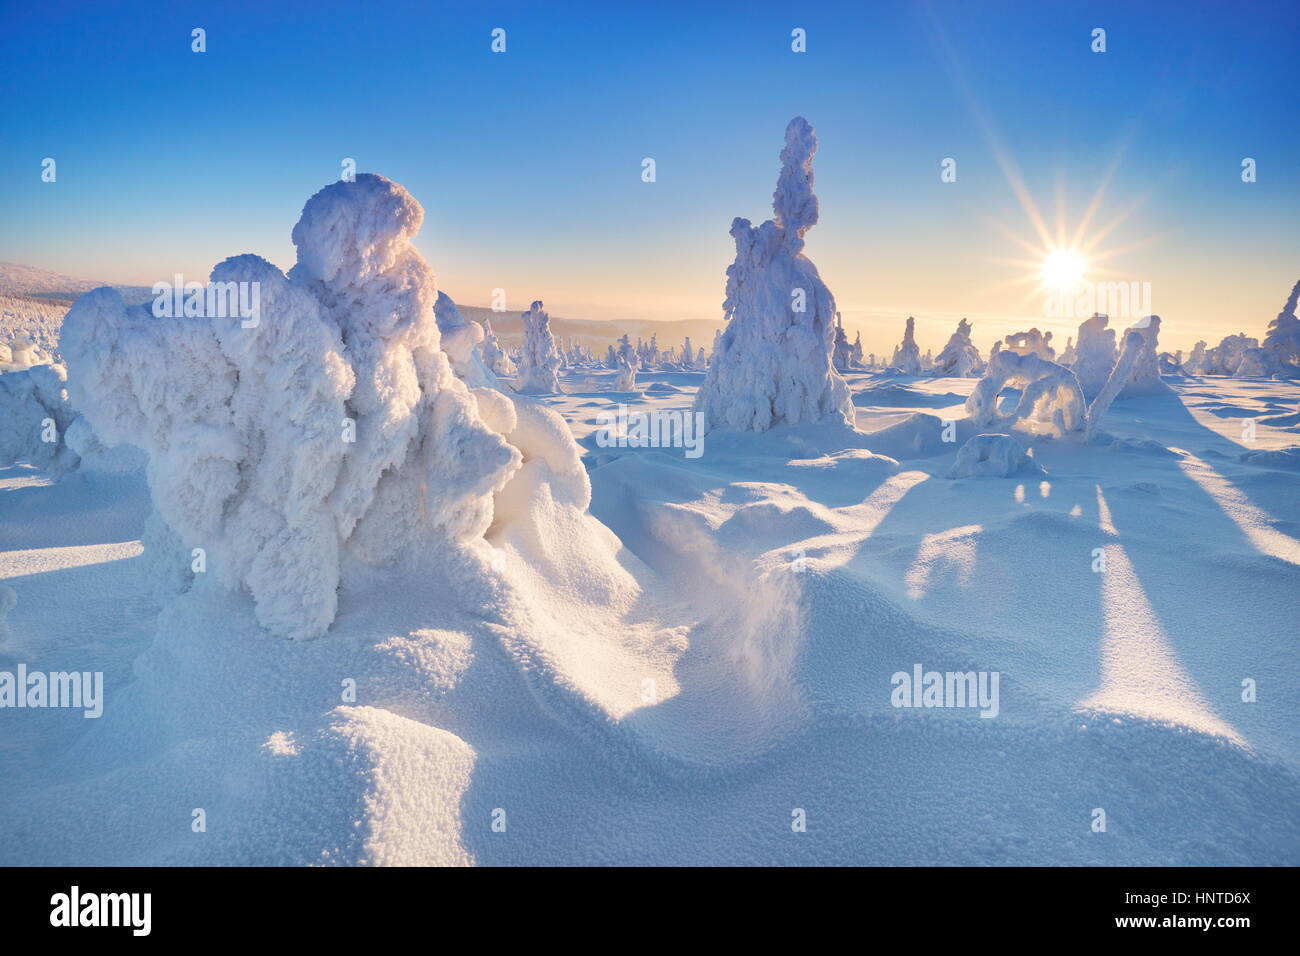 Winter snow scenery at sunset time, Karkonosze Mountains, Poland Stock Photo